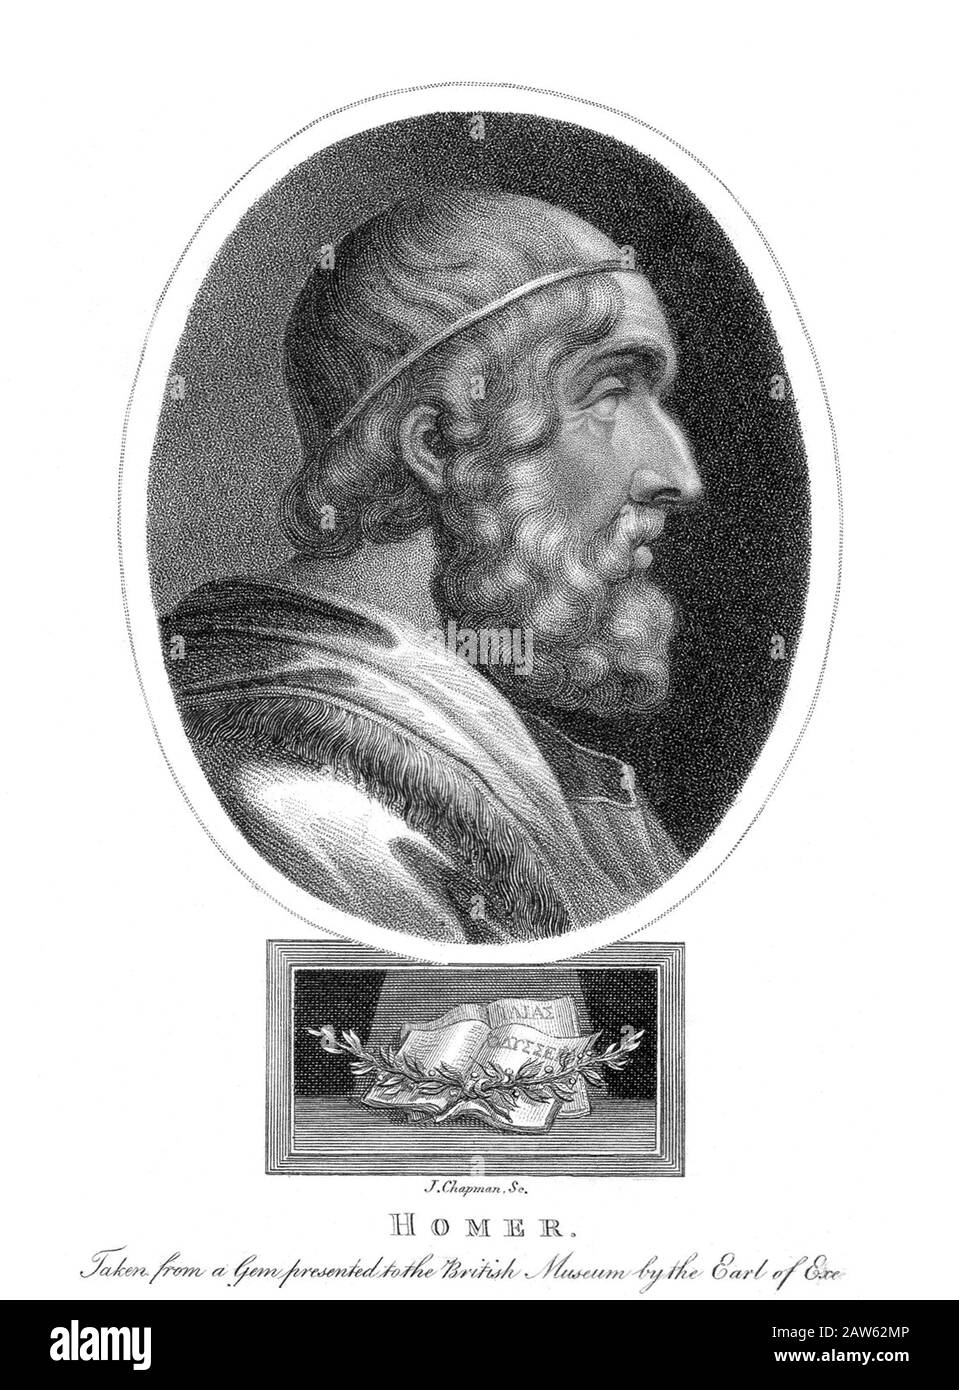 1809 , GRAN BRETAÑA : el antiguo poeta griego HOMER ( siglo VIII antes de Cristo ) . Imagen de retrato de fantasía de una antigua joya presentada en Foto de stock